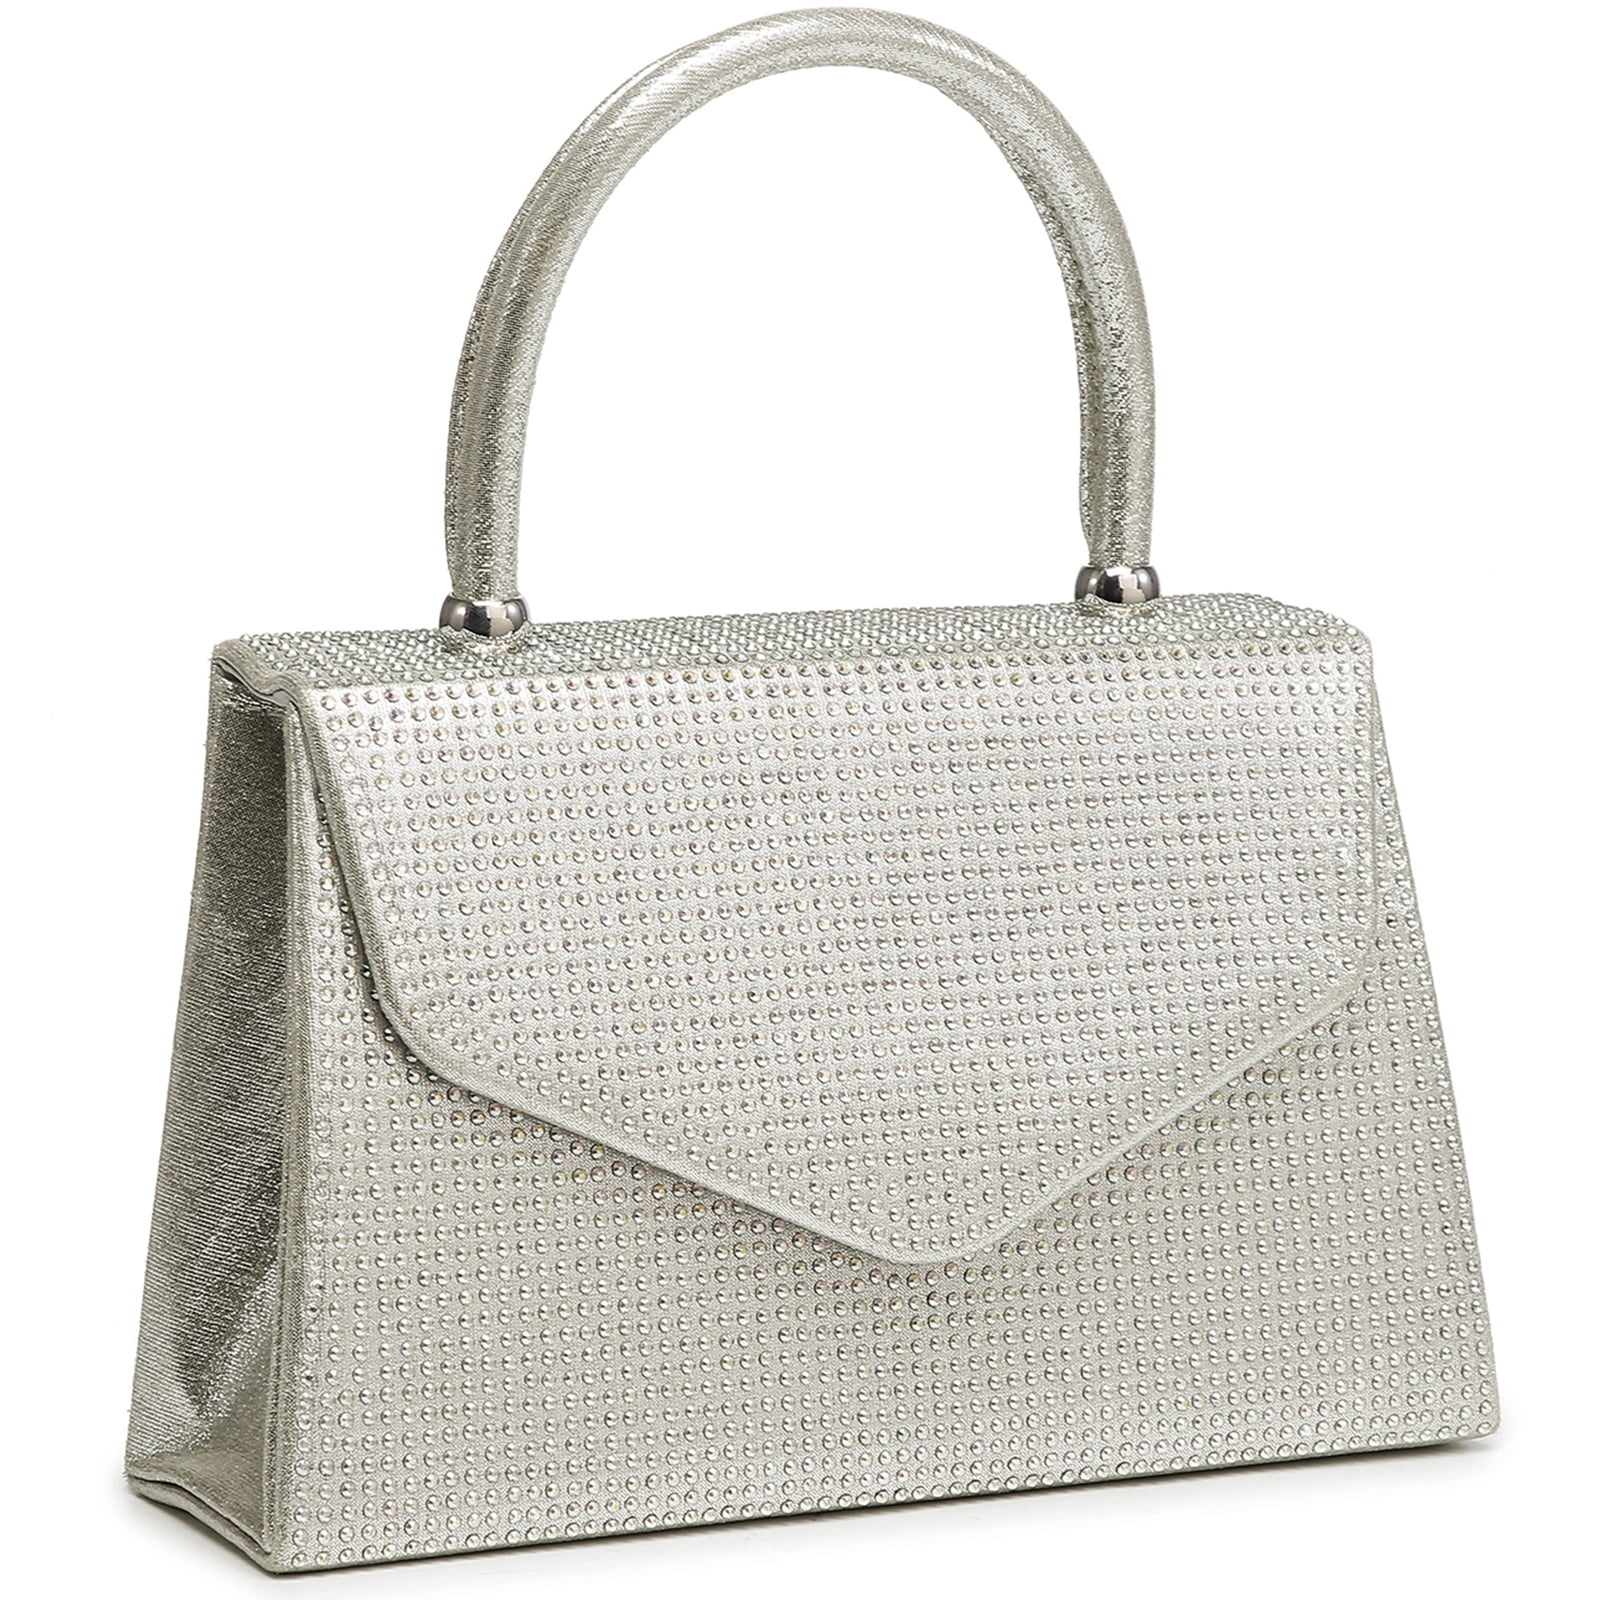 Clutches & Evening Bags | Dillard's